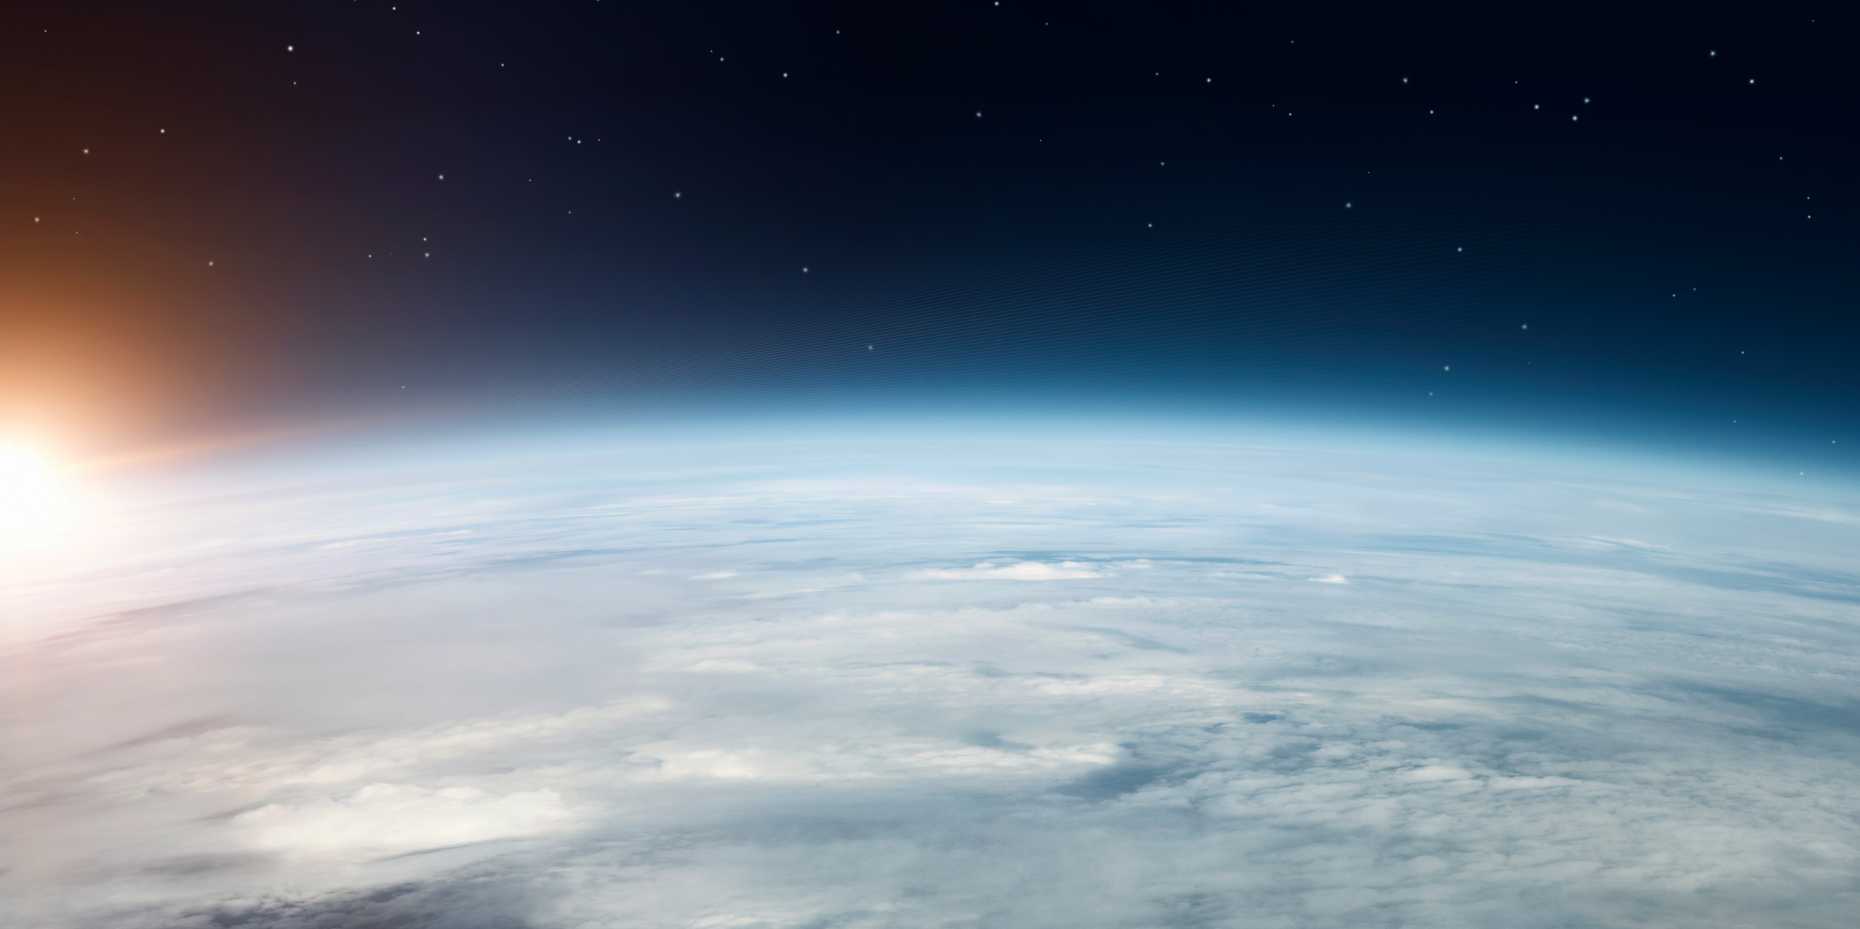 Vergr?sserte Ansicht: Die stratosphärische Ozonschicht